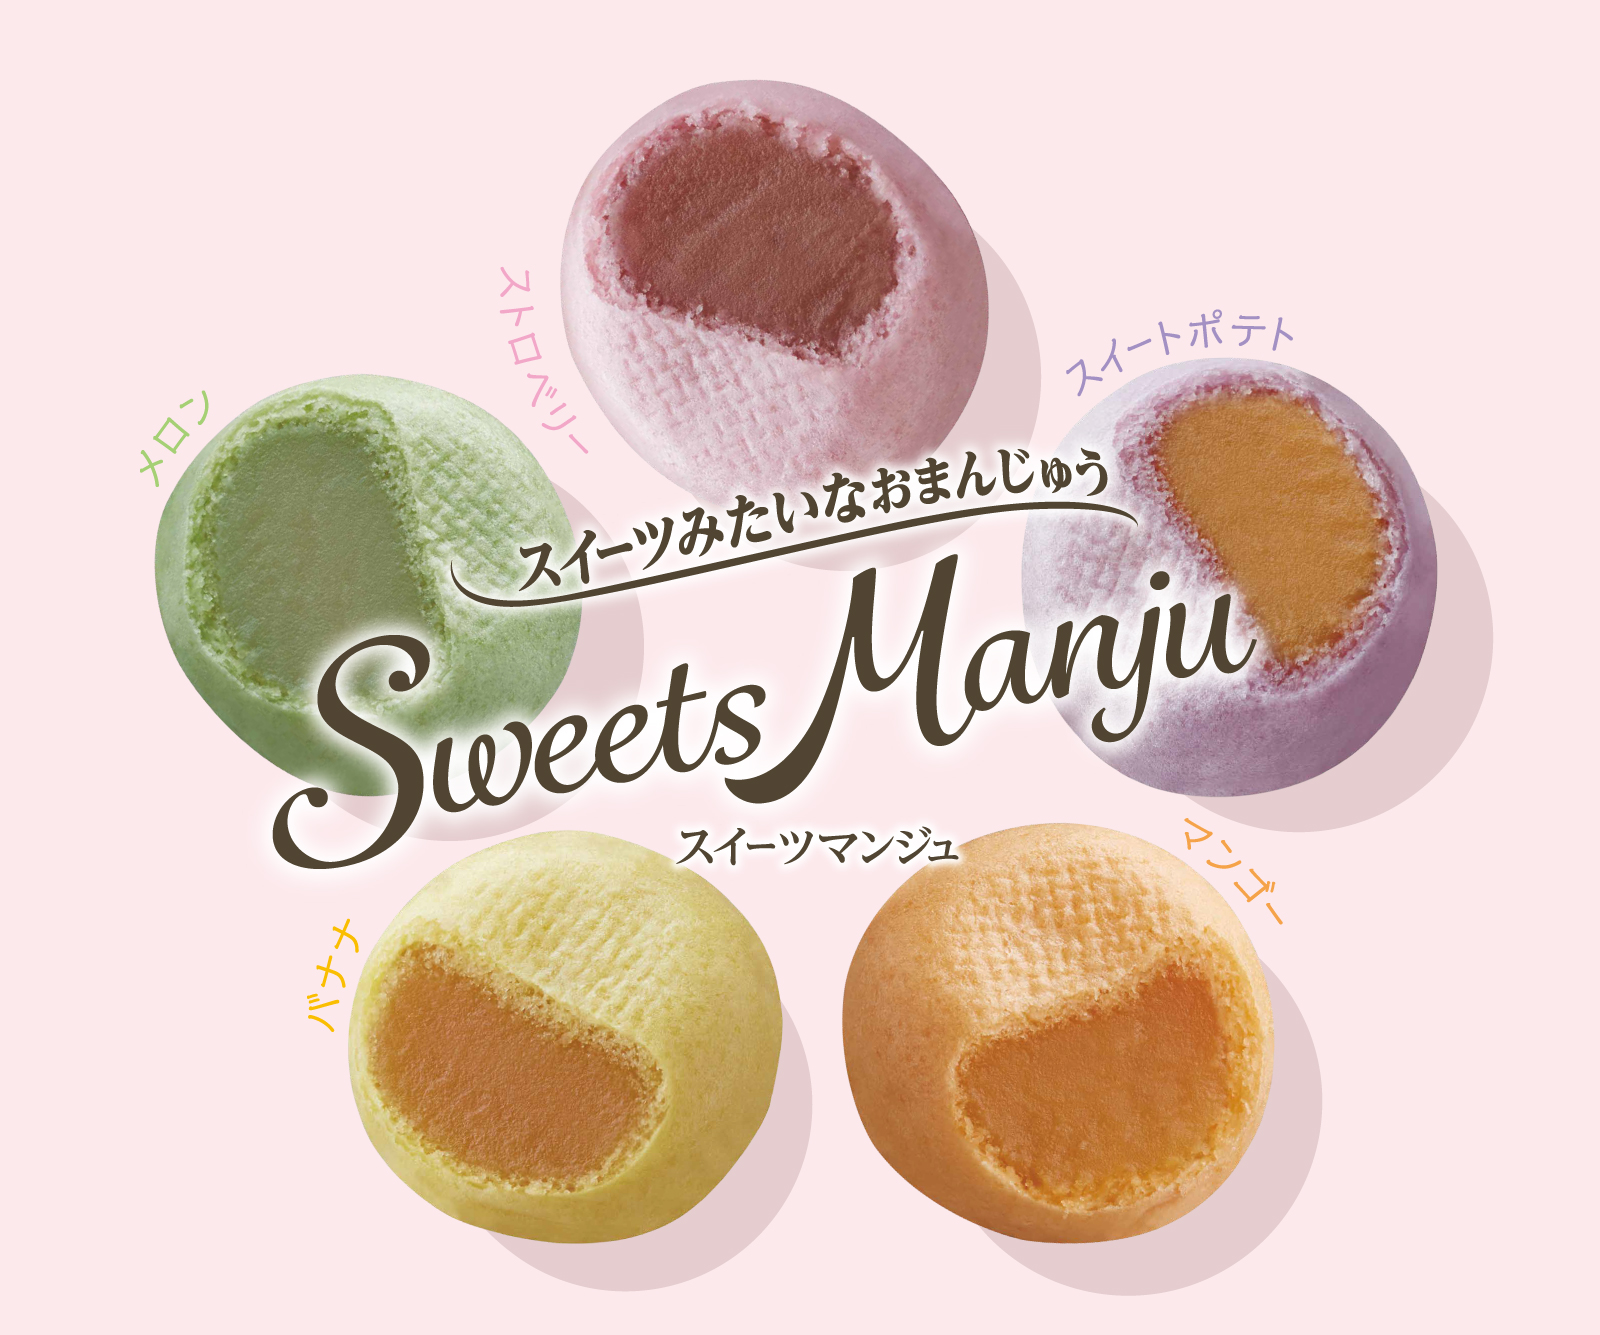 Sweets Manju（スイーツ マンジュ）